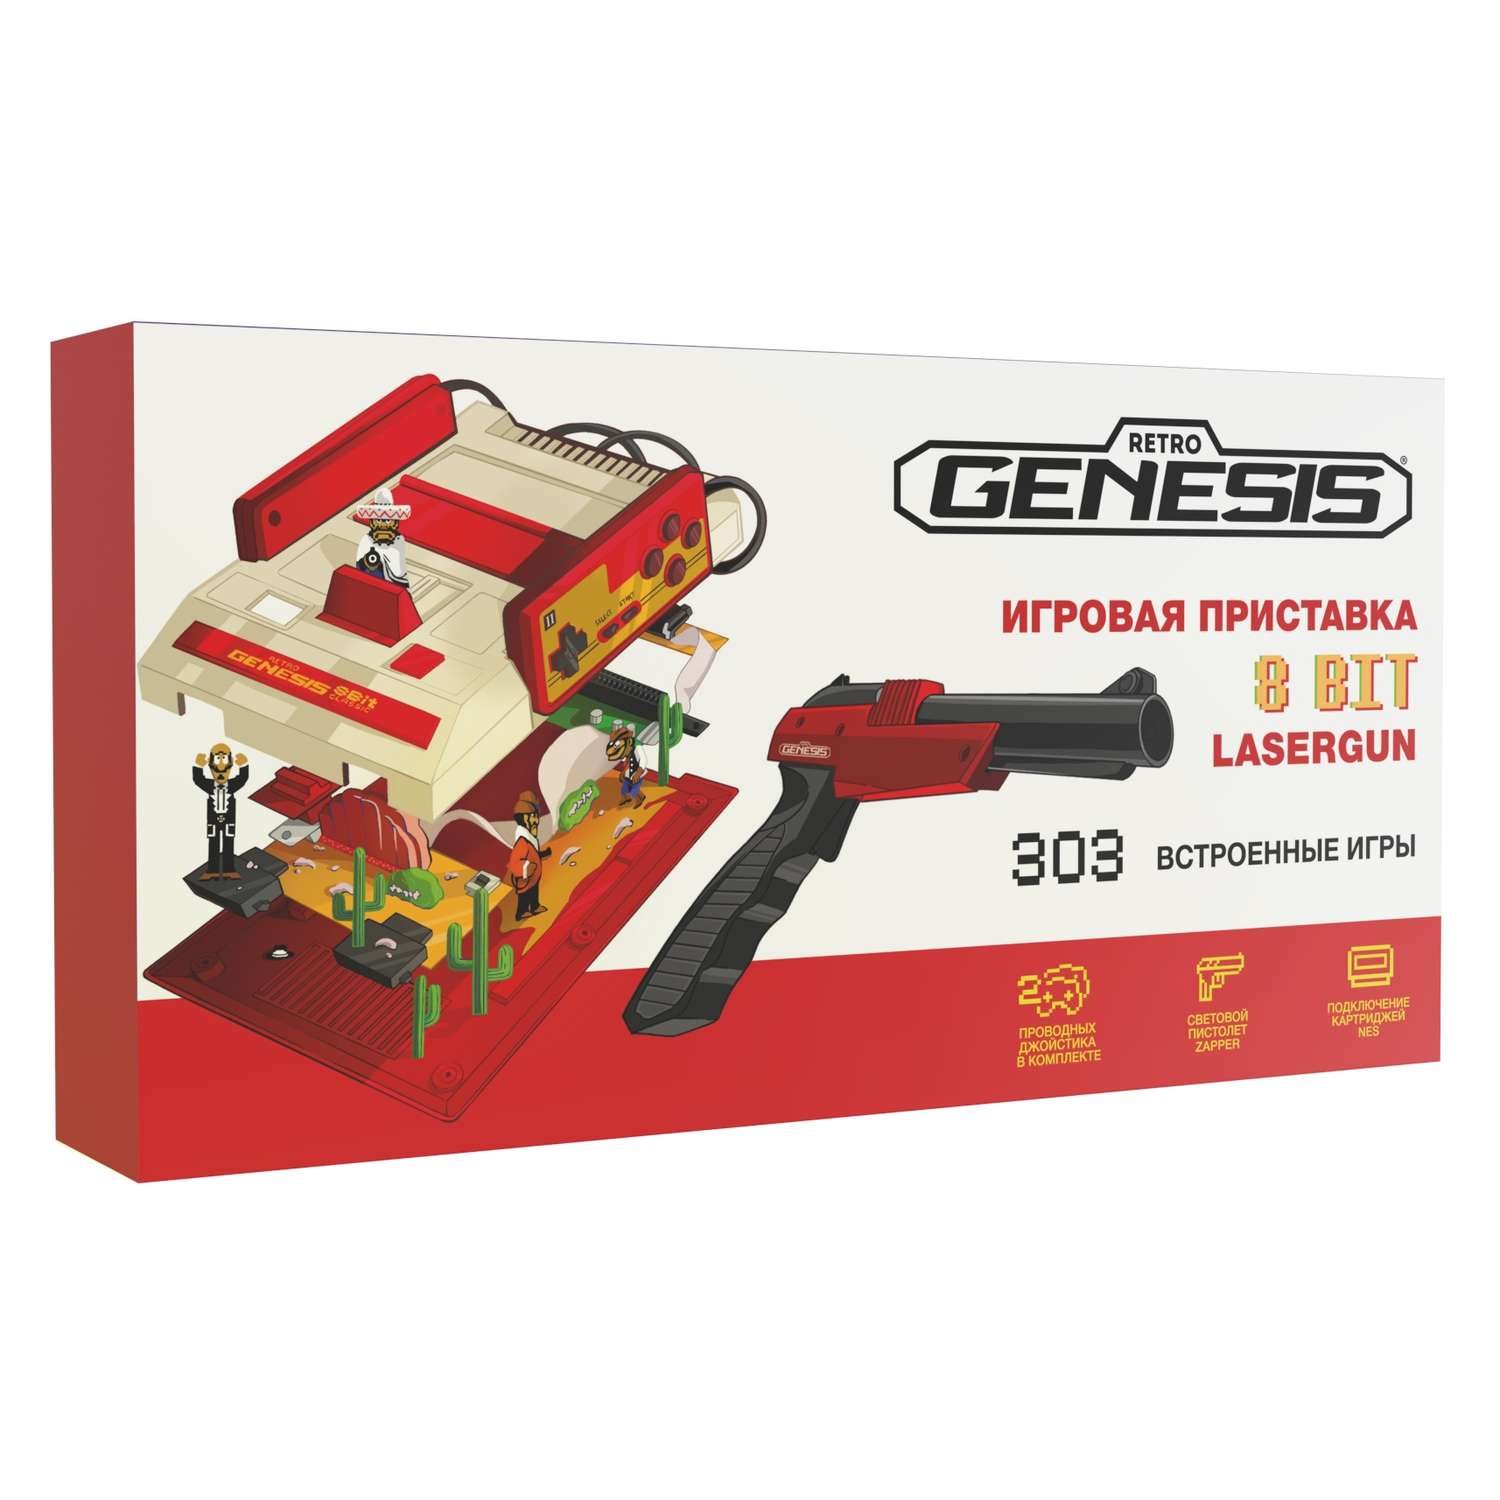 Игровая приставка для детей Retro Genesis 8 Bit Lasergun + 303 игры / AV кабель/2 пров.джойстика/пистолет для лампового телевизора - фото 1